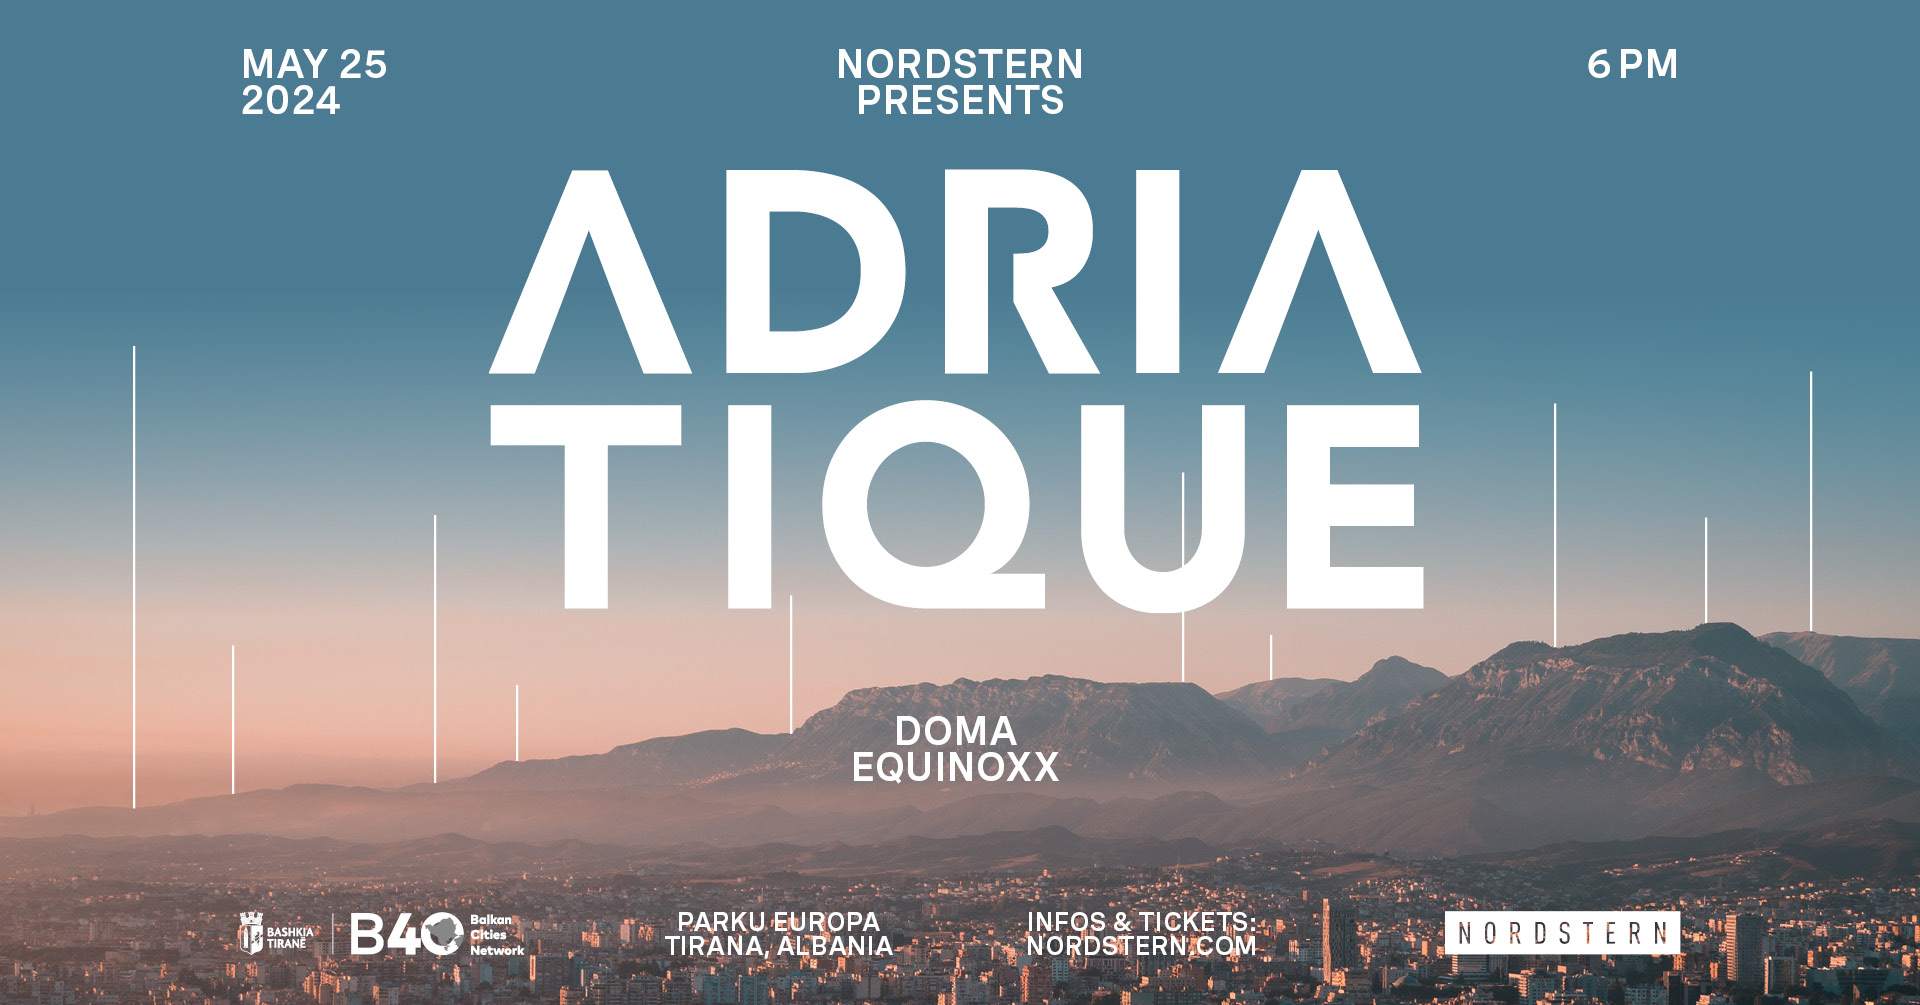 Nordstern presents: Adriatique - フライヤー表